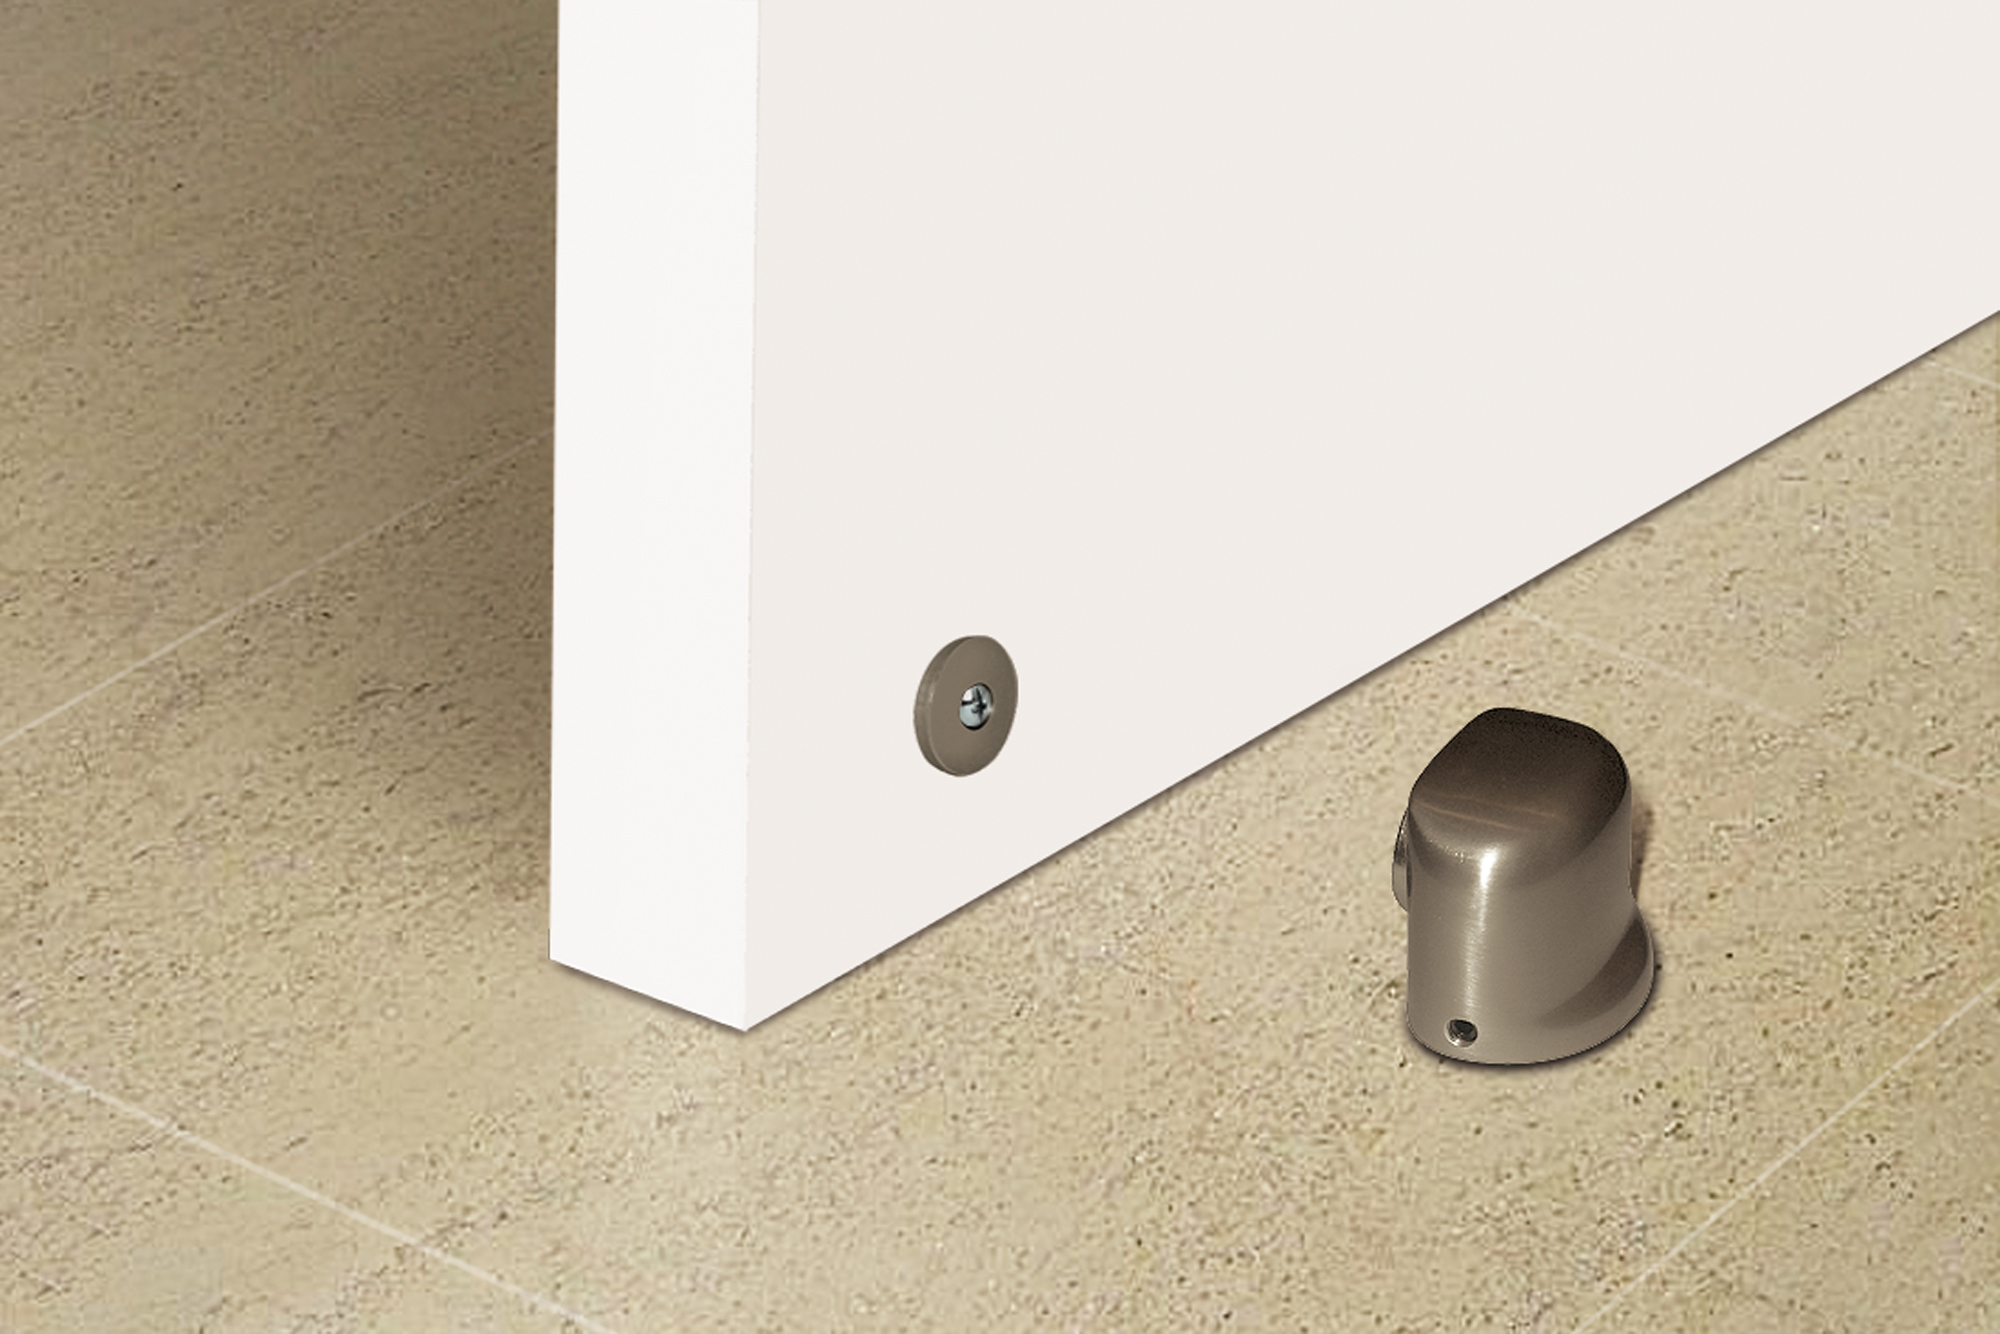 Retenedor de puerta con imán atornillable con acabado inox brillo. Dimensiones: 44x36x38 mm - Ítem1